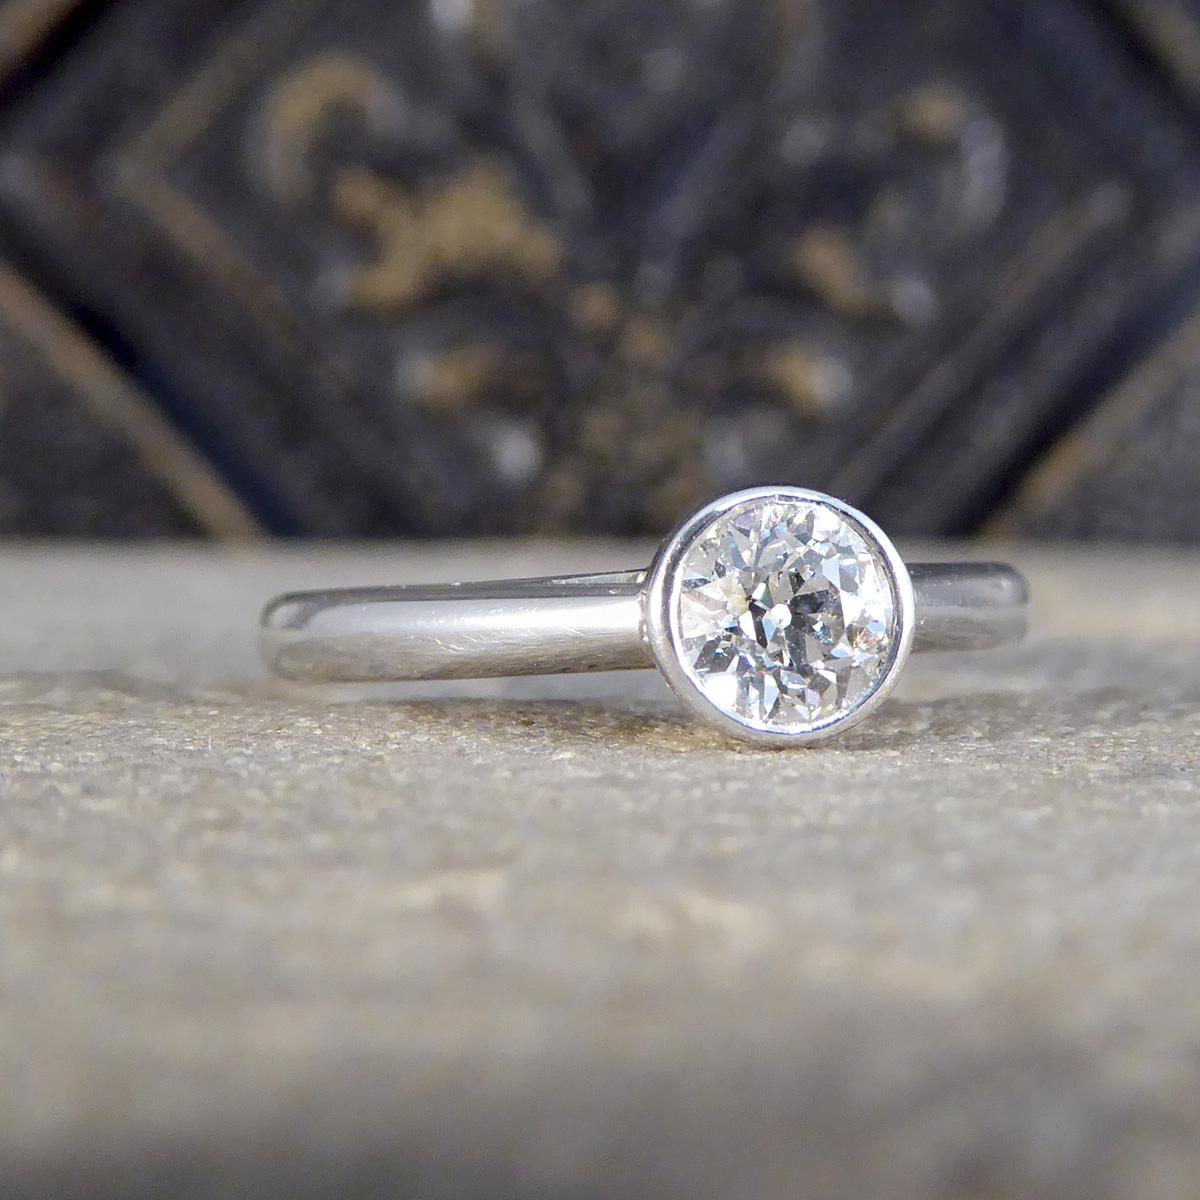 Cette magnifique bague solitaire à diamant en or blanc 18ct est l'incarnation même de l'élégance et de la simplicité, conçue pour ceux qui apprécient la beauté raffinée. La pièce centrale de cette bague exquise est un diamant de taille européenne